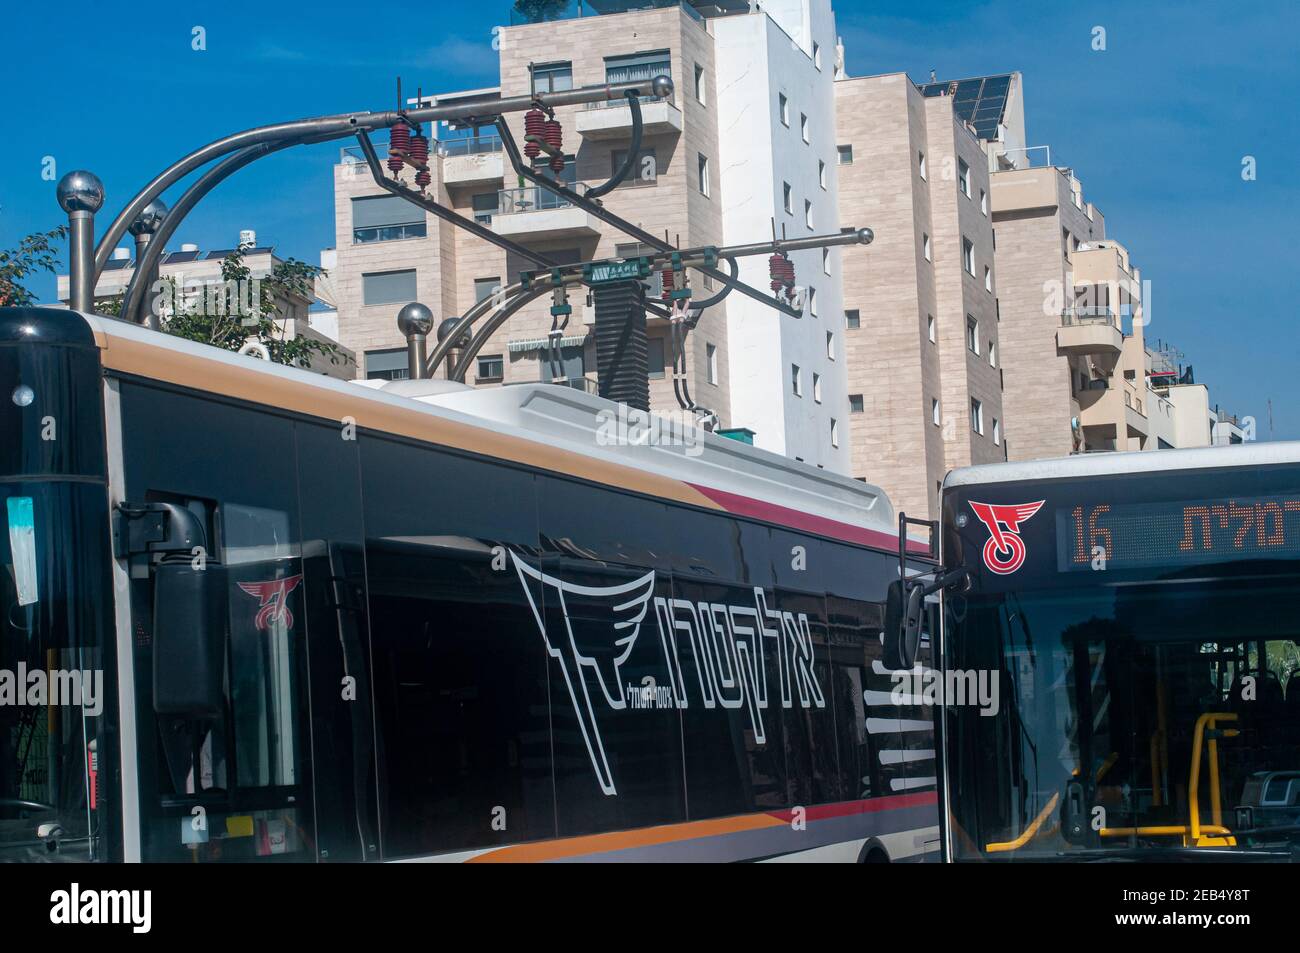 Station de charge pour bus électriques. Photographié dans les bus de tel Aviv, Israël Banque D'Images